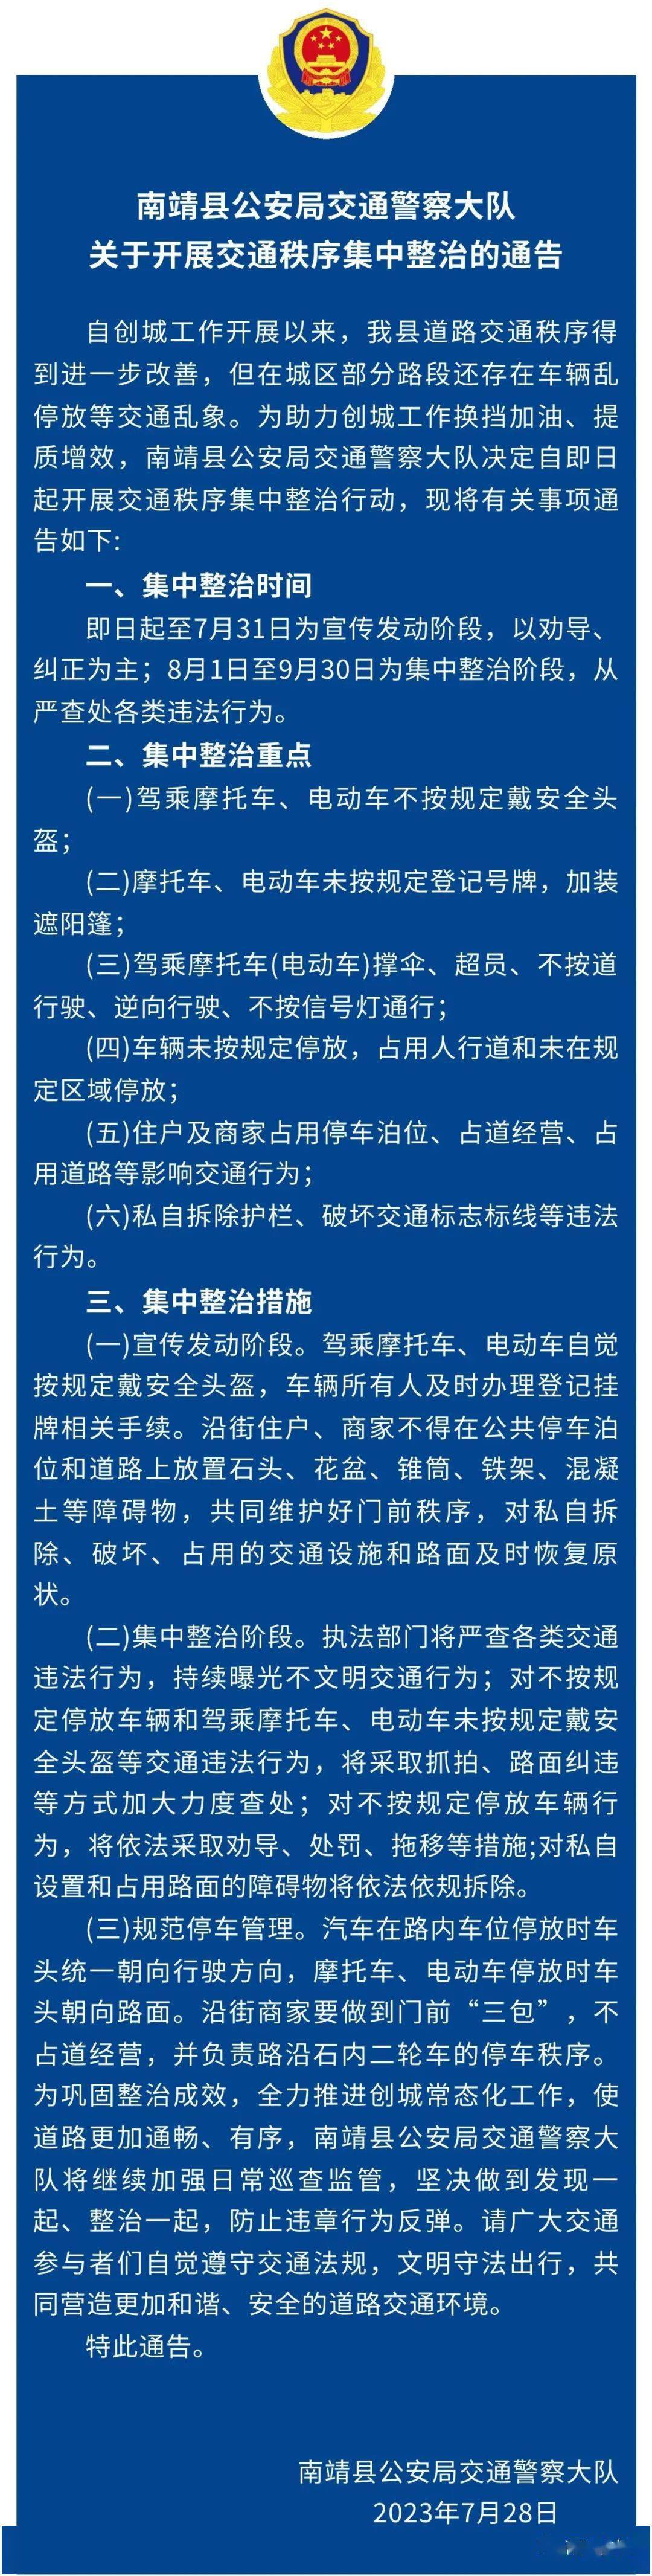 南靖县公安局交通警察大队关于开展交通秩序集中整治的通告